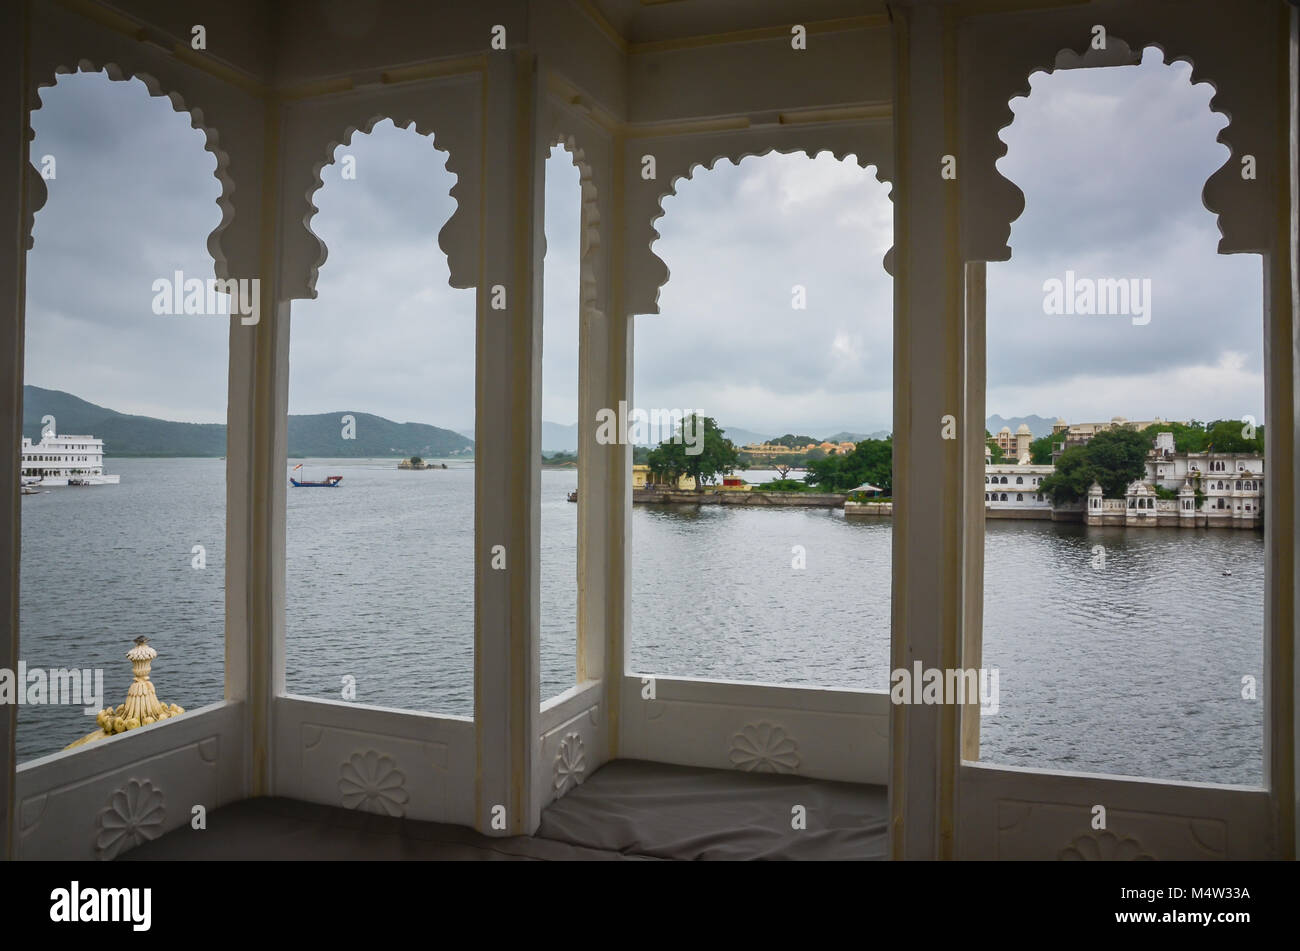 Le lac Pichola et palais de la ville vue à travers 4 panneaux, fenêtres indien à Udaipur, Inde. Banque D'Images